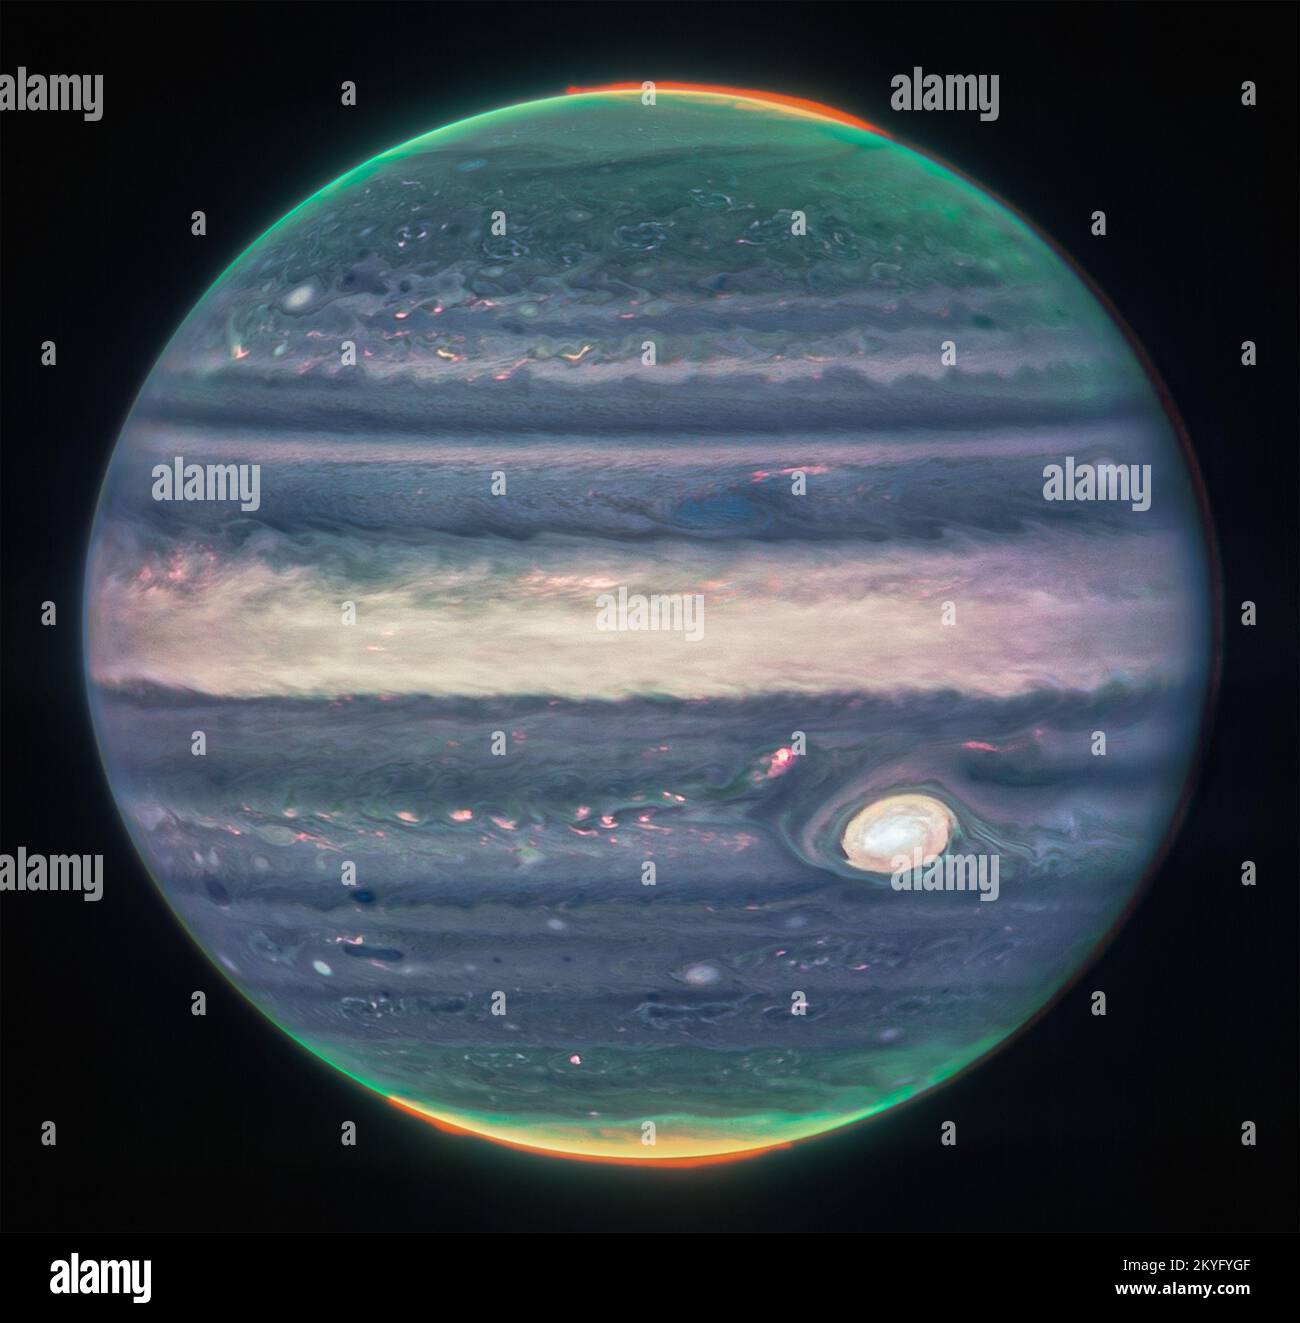 Le télescope spatial James Webb de la NASA a capturé de nouvelles images de Jupiter, présentant les tempêtes géantes de la planète, les vents puissants, les aurores et les conditions extrêmes de température et de pression. Les deux images proviennent de la caméra proche infrarouge (NIRCam) de l'observatoire, qui possède trois filtres infrarouges spécialisés qui présentent les détails de la planète. La lumière infrarouge étant invisible pour l'œil humain, elle a été cartographiée sur le spectre visible. En général, les longueurs d'onde les plus longues apparaissent plus rouges et les longueurs d'onde les plus courtes apparaissent plus bleues. Les scientifiques ont collaboré avec Judy SC, une citoyenne scientifique Banque D'Images